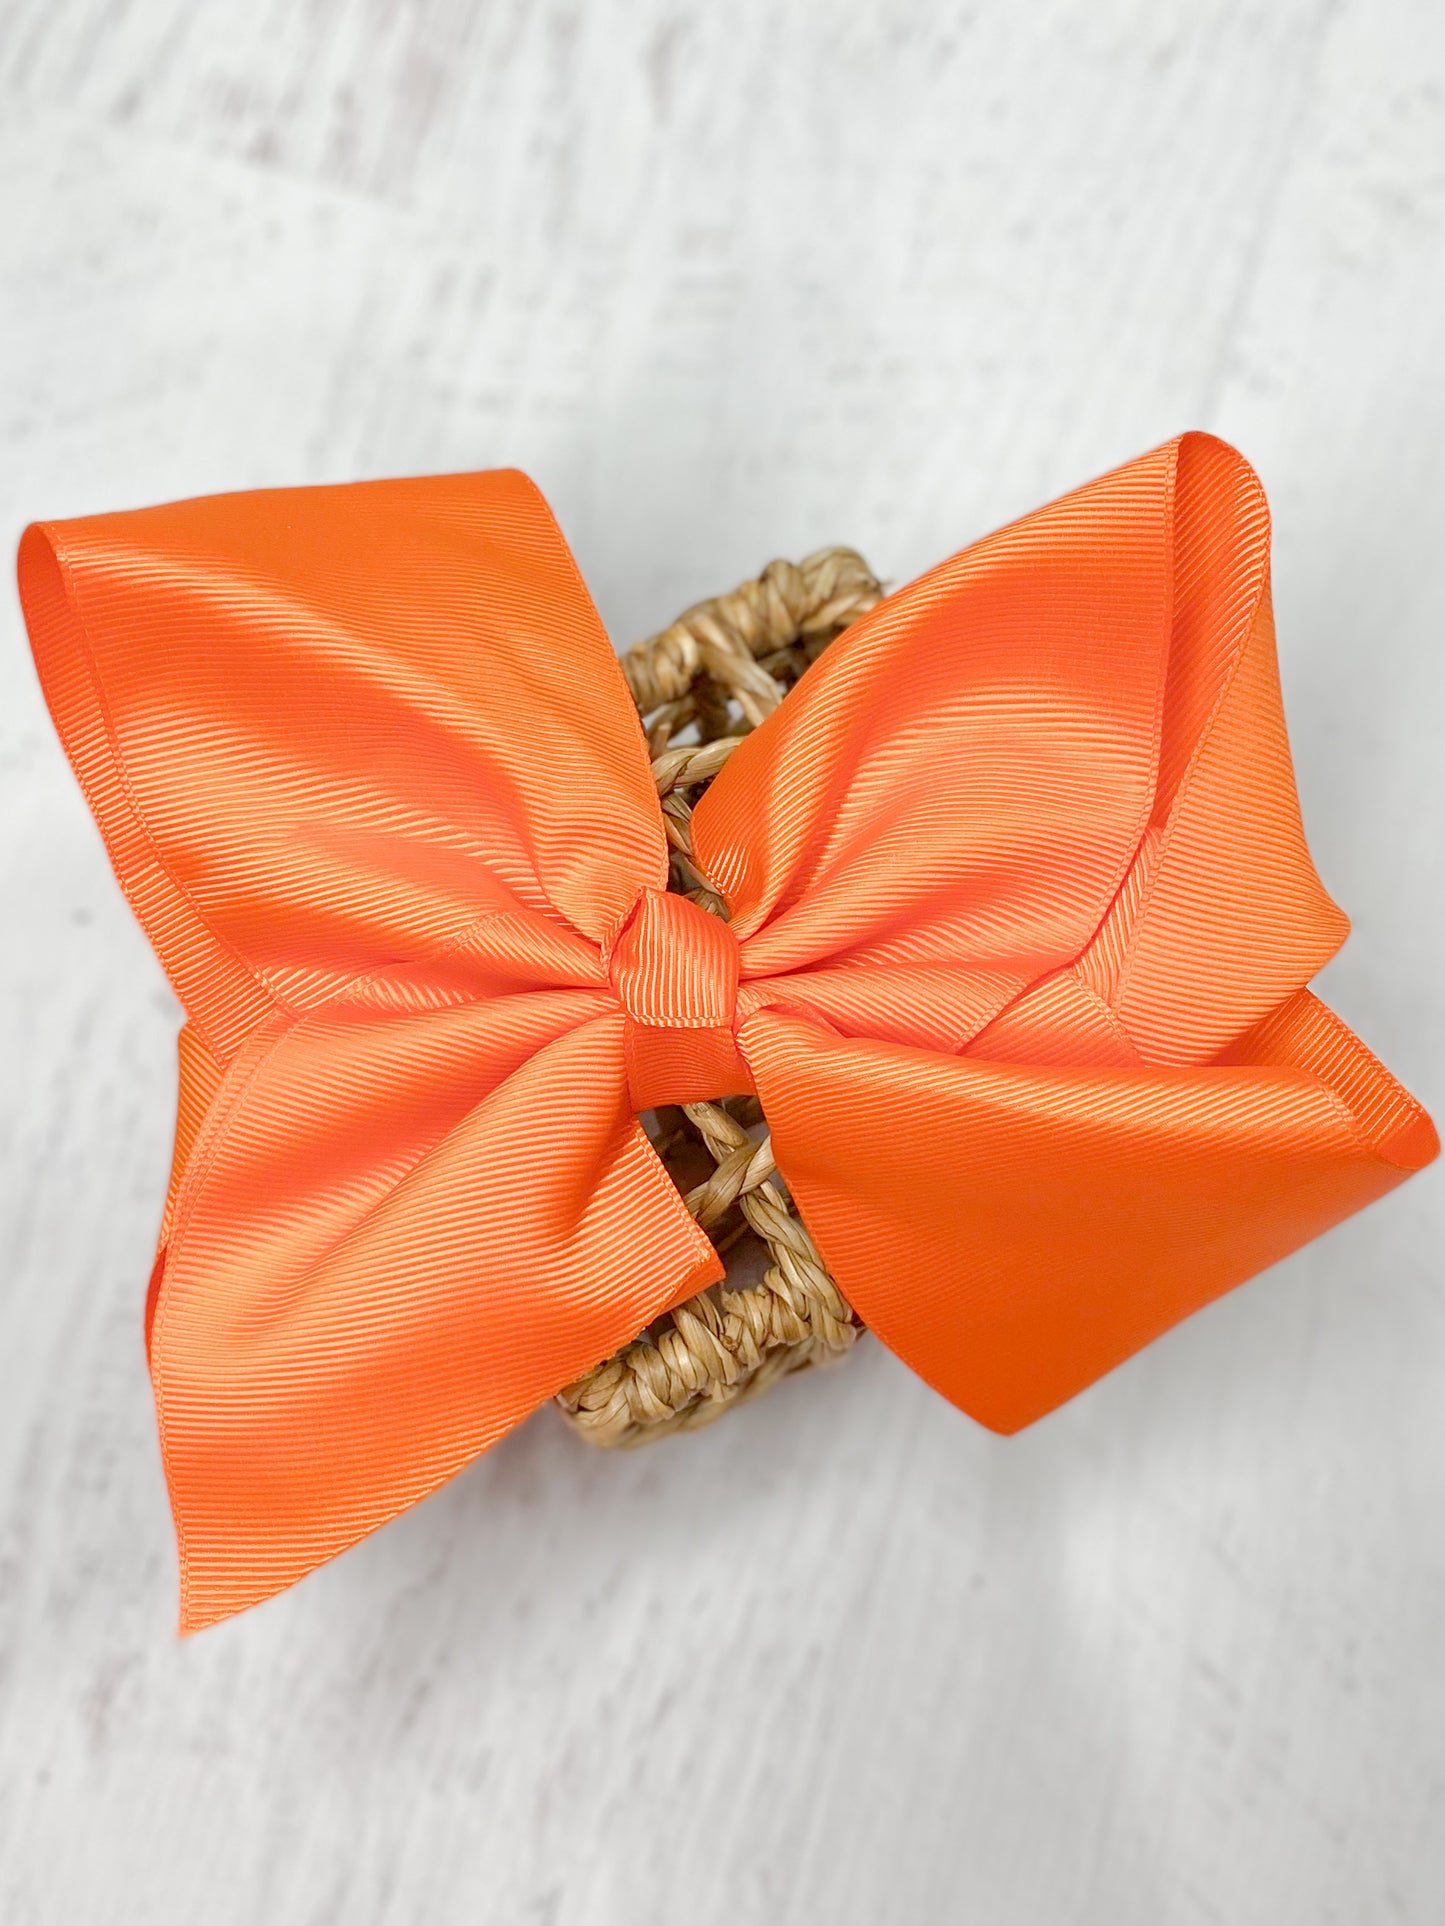 Orange Big Bows - Texas Size Grosgrain Hair Bow